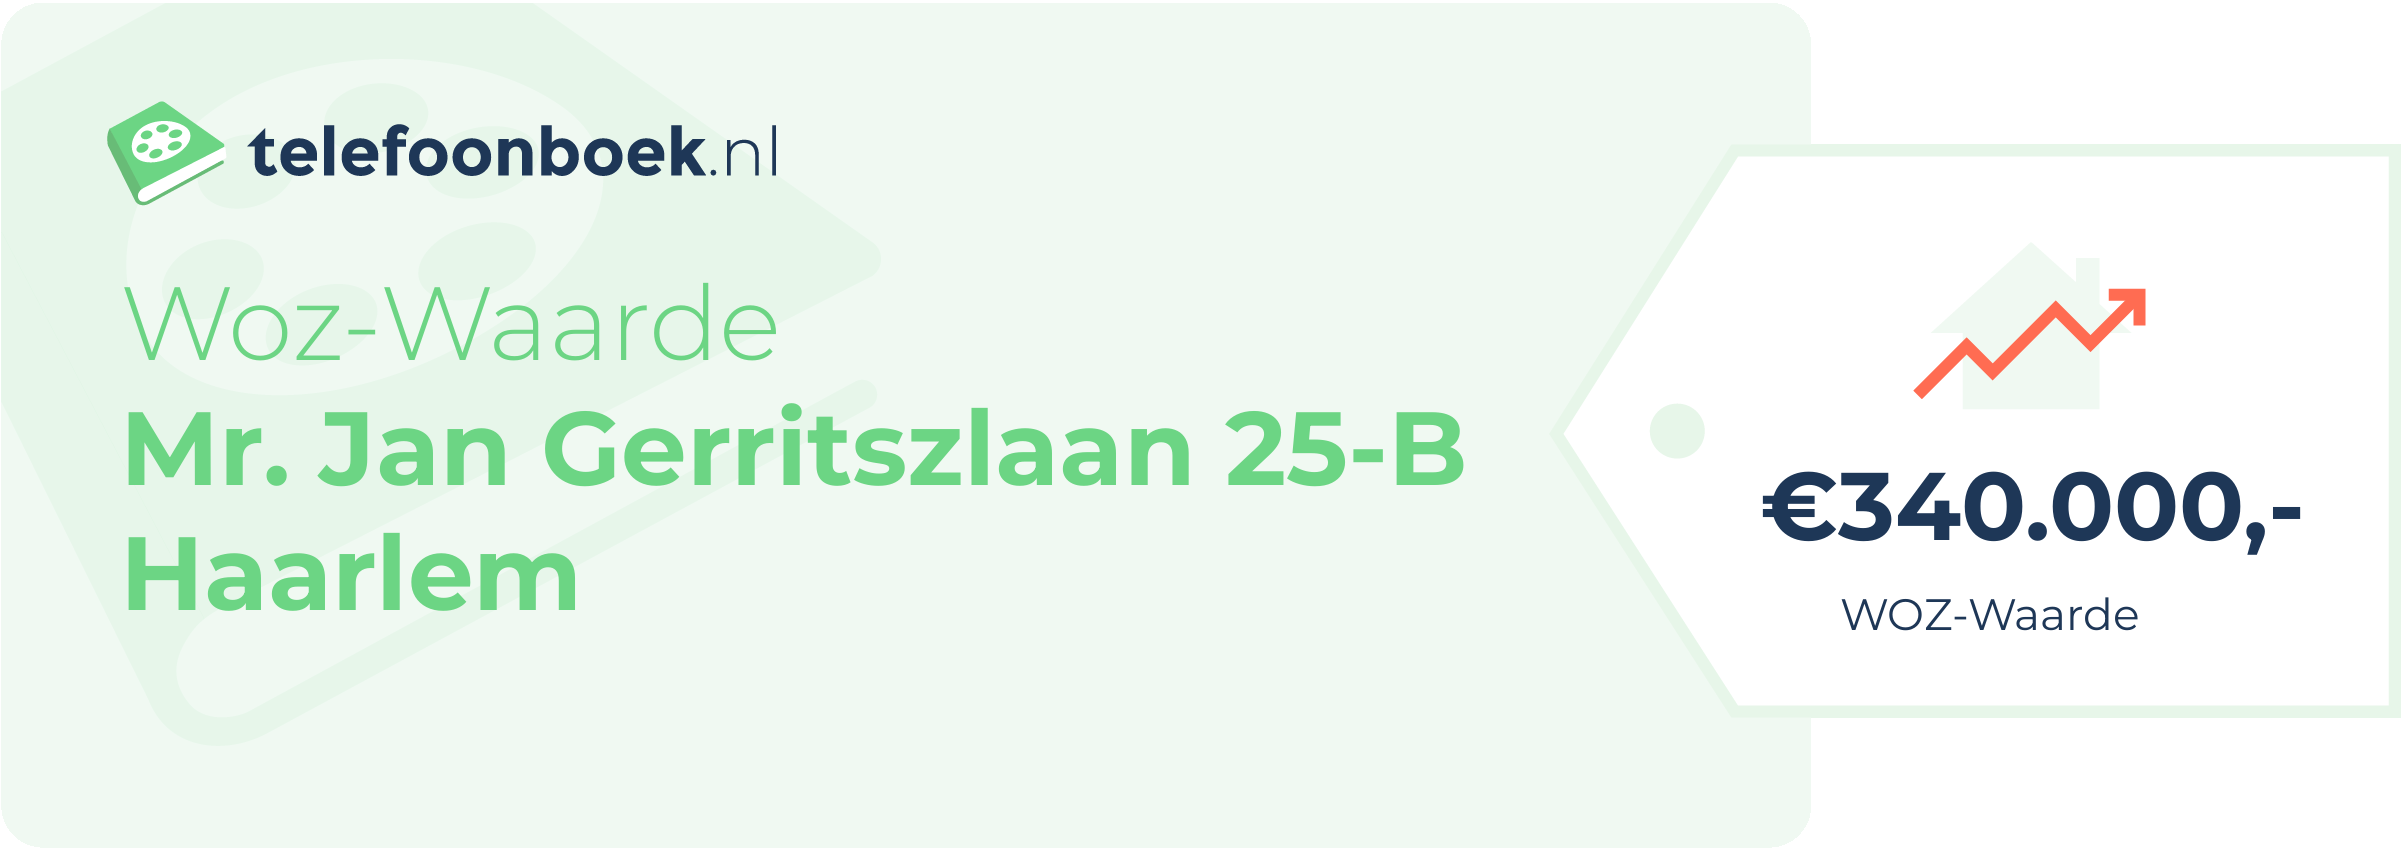 WOZ-waarde Mr. Jan Gerritszlaan 25-B Haarlem